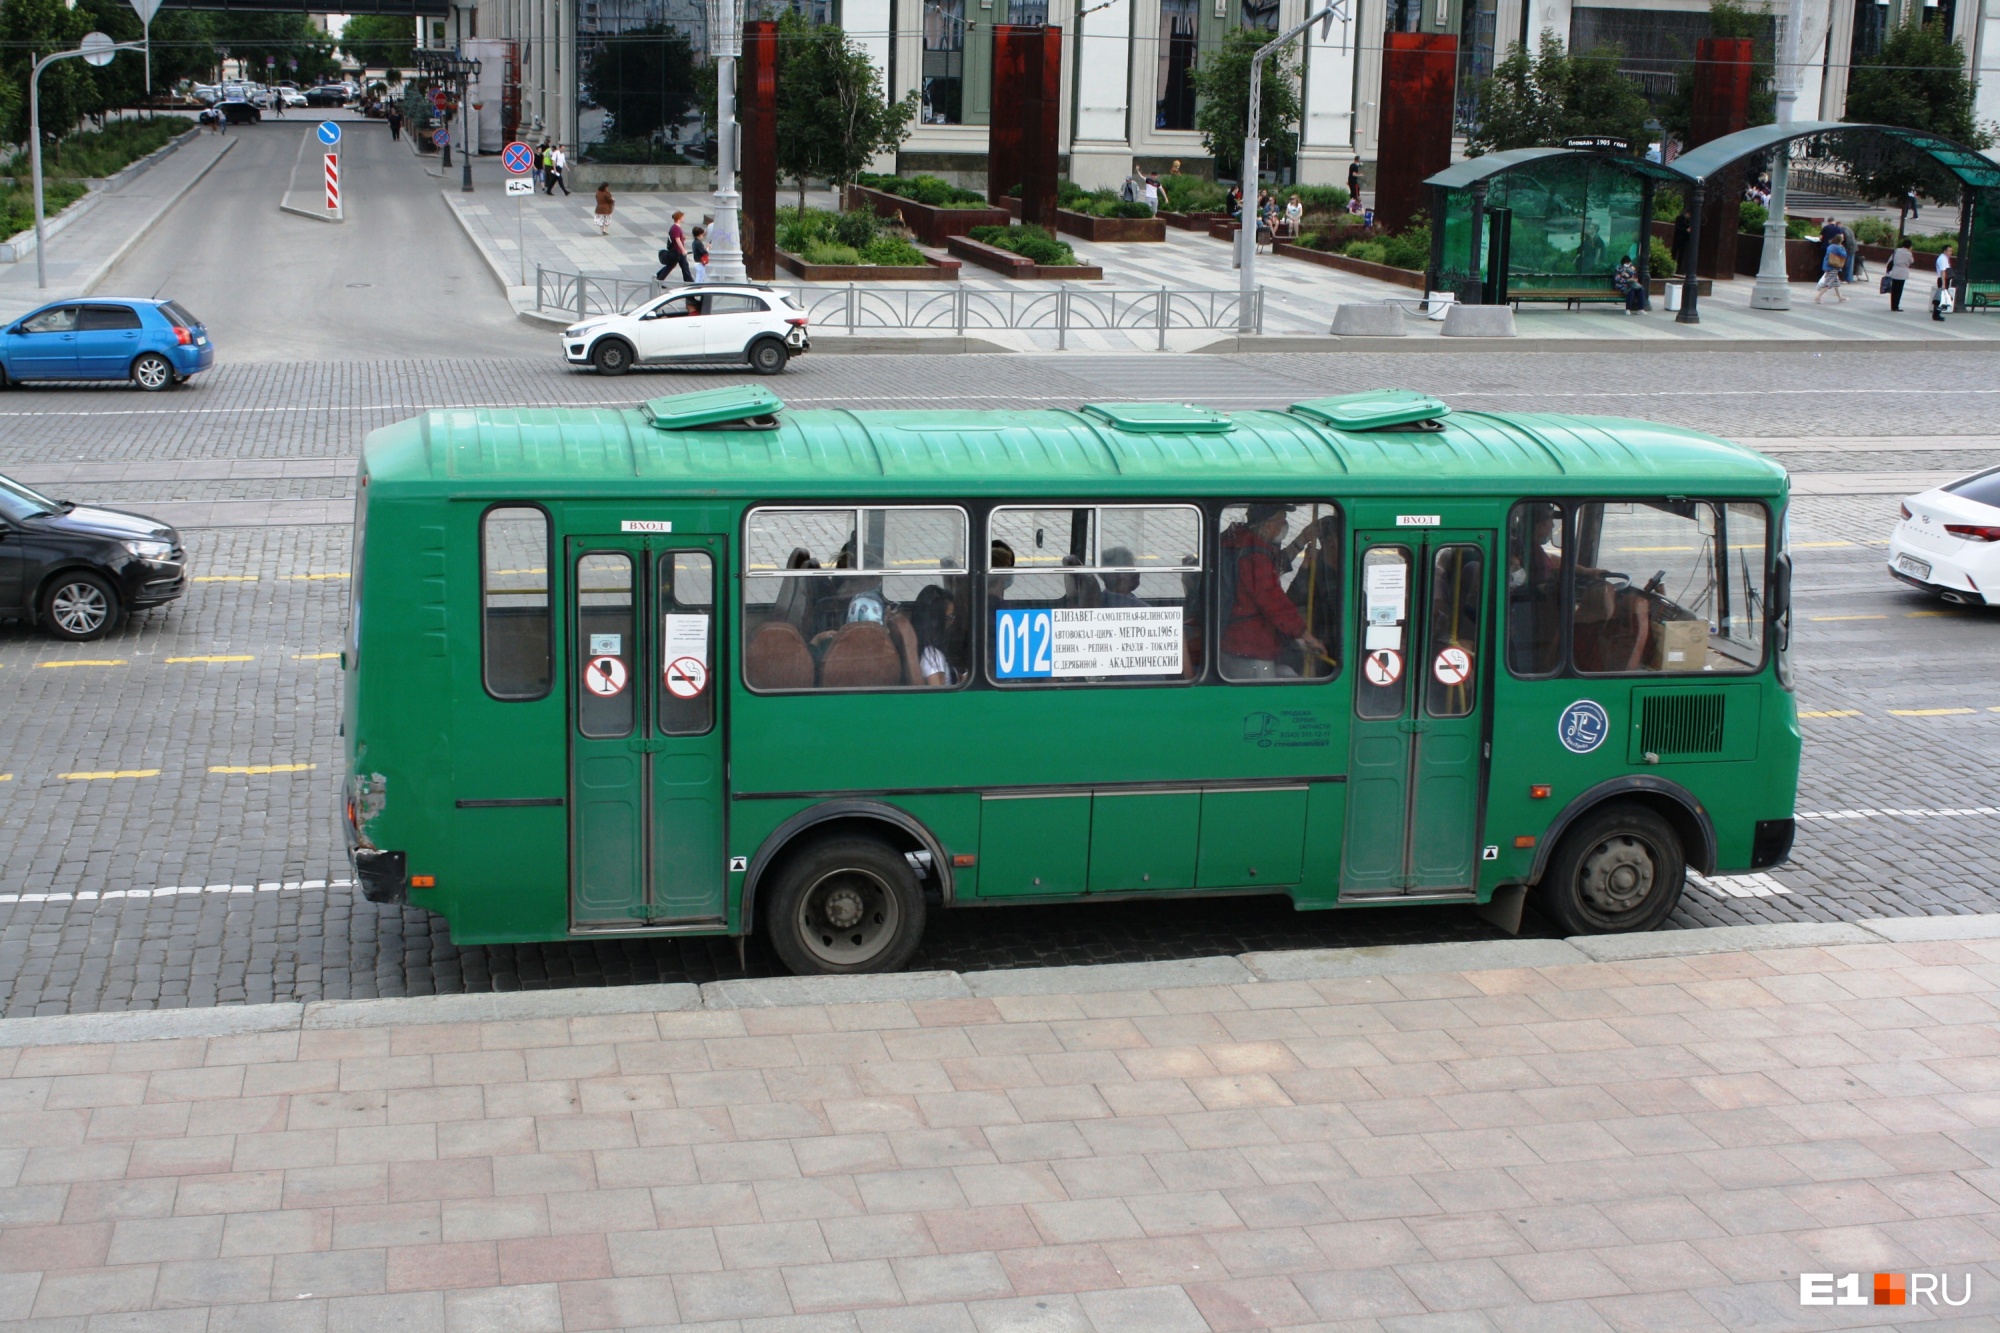 Жителям Академического, которые теряли сознание в давках, добавили автобусов